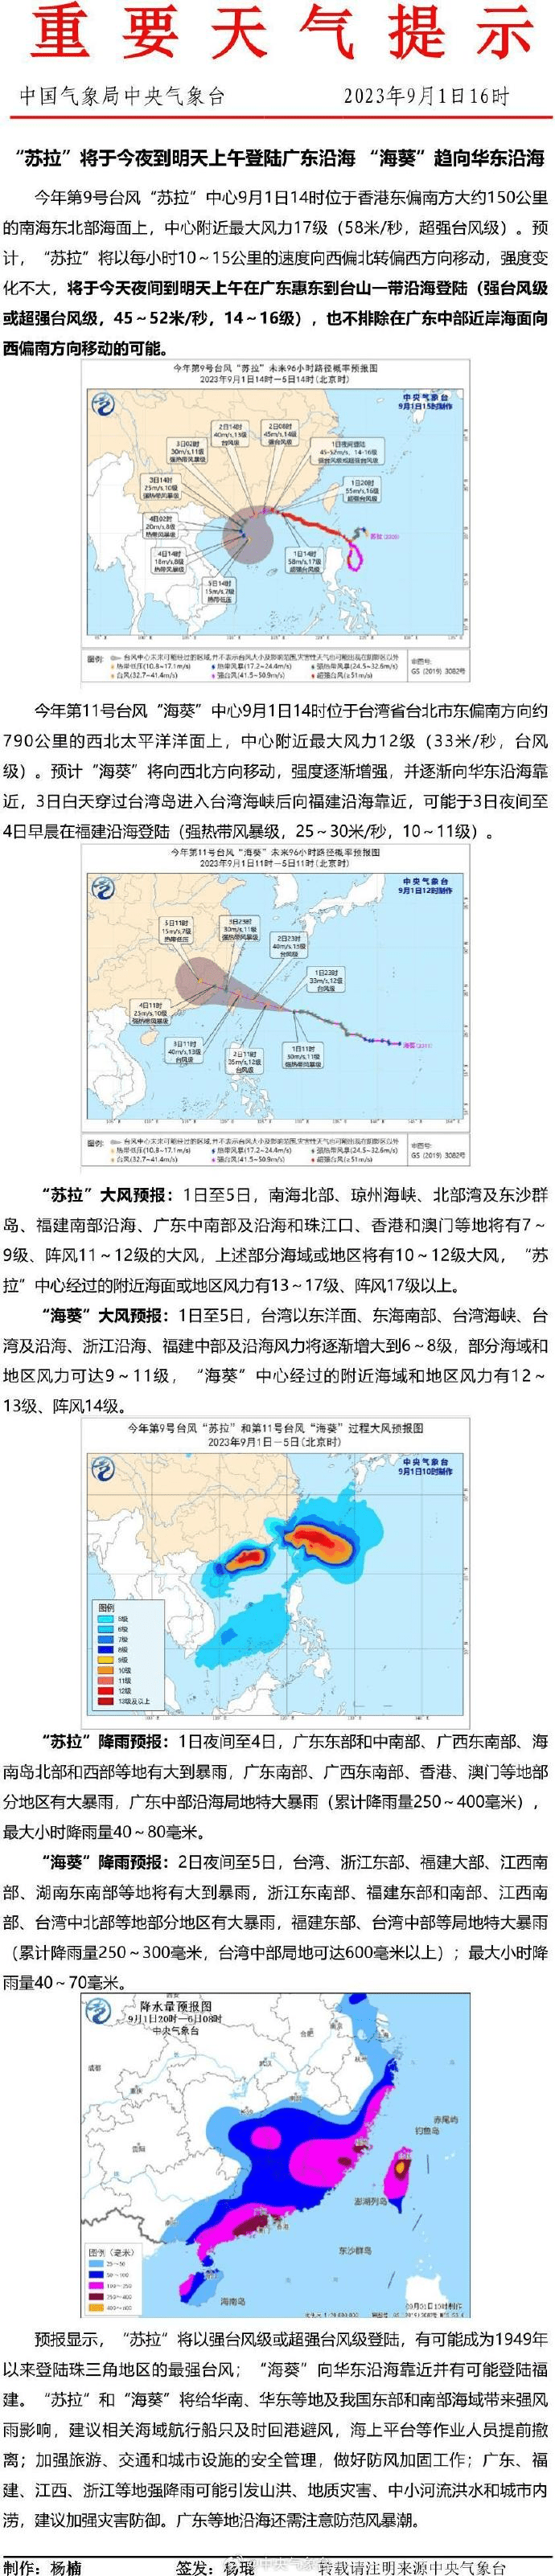 中央氣象台颱風快訊。